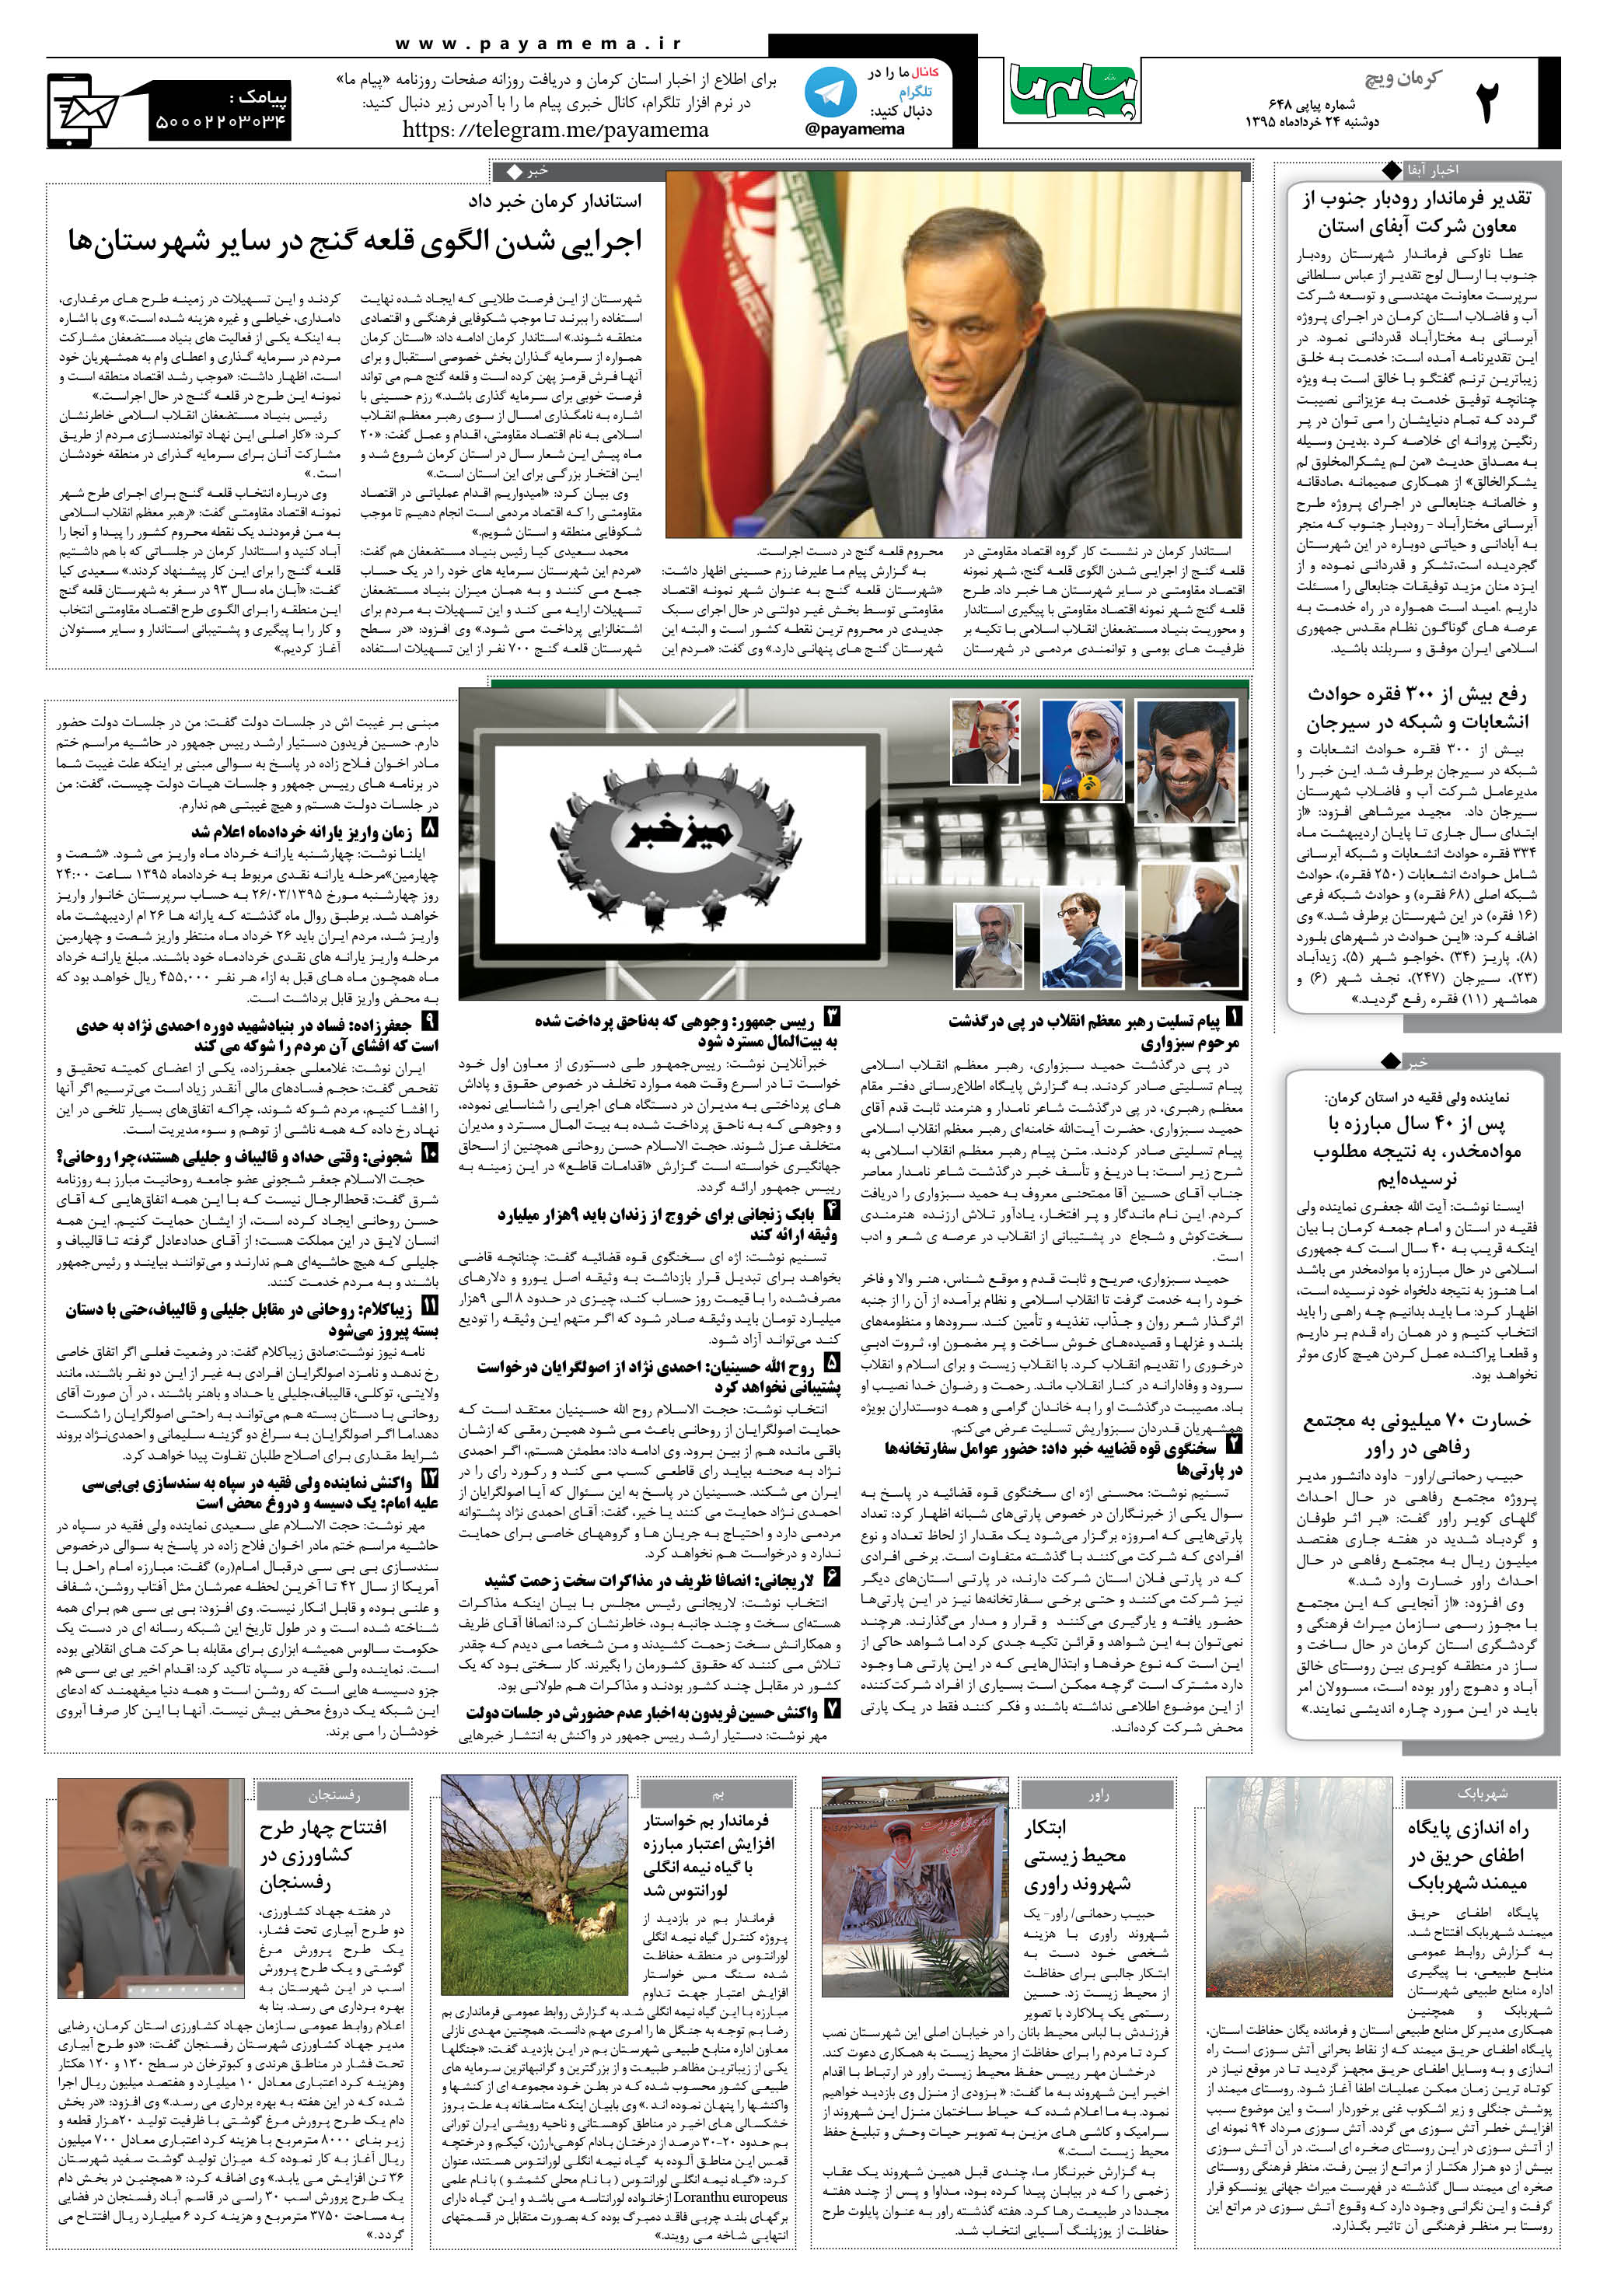 صفحه کرمان ویج شماره 648 روزنامه پیام ما